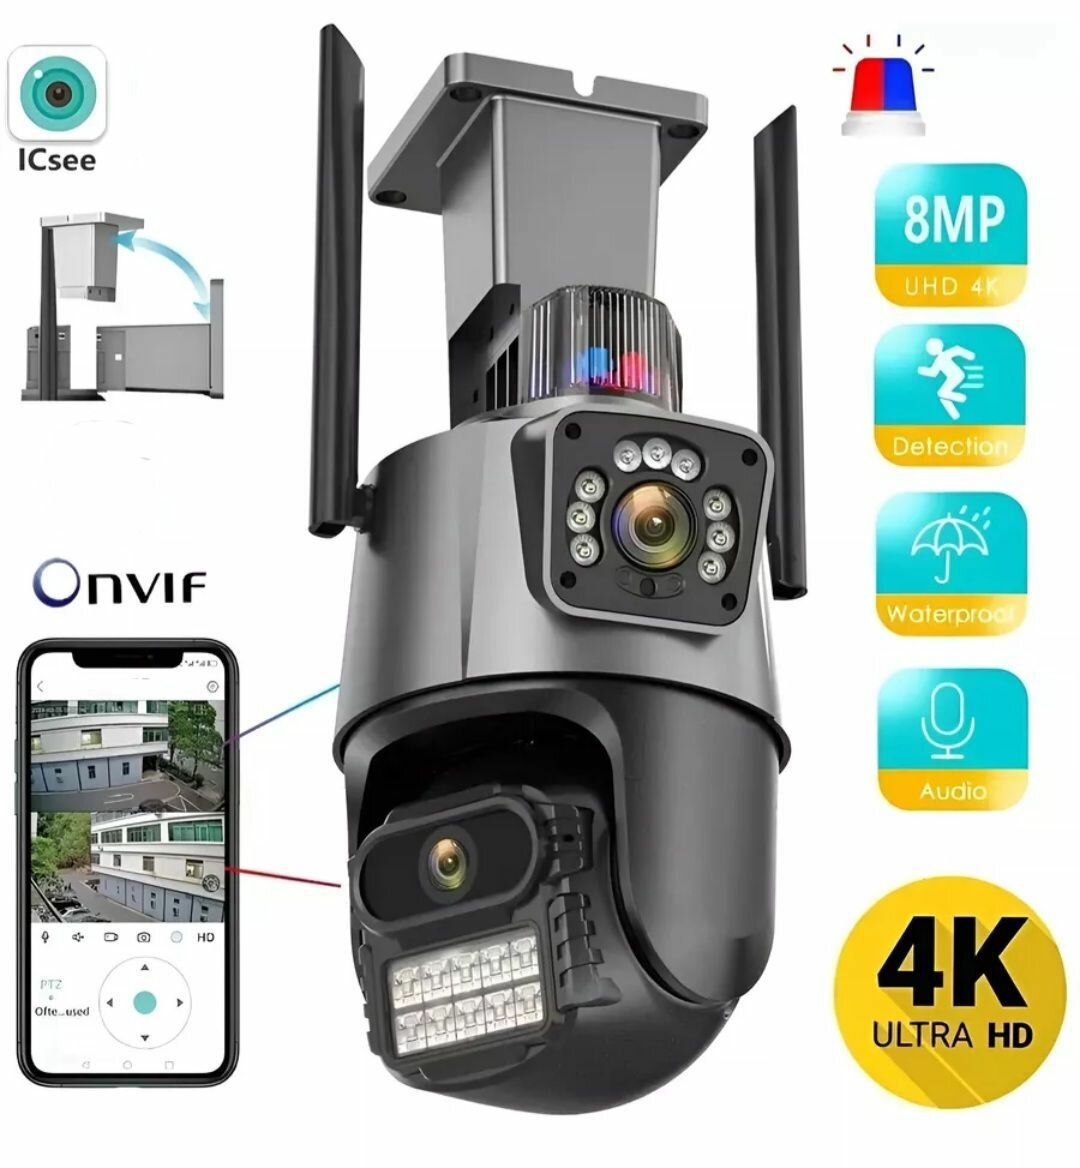 Уличная WI-FI камера, два объектива, 4 Mp, разрешение 4К